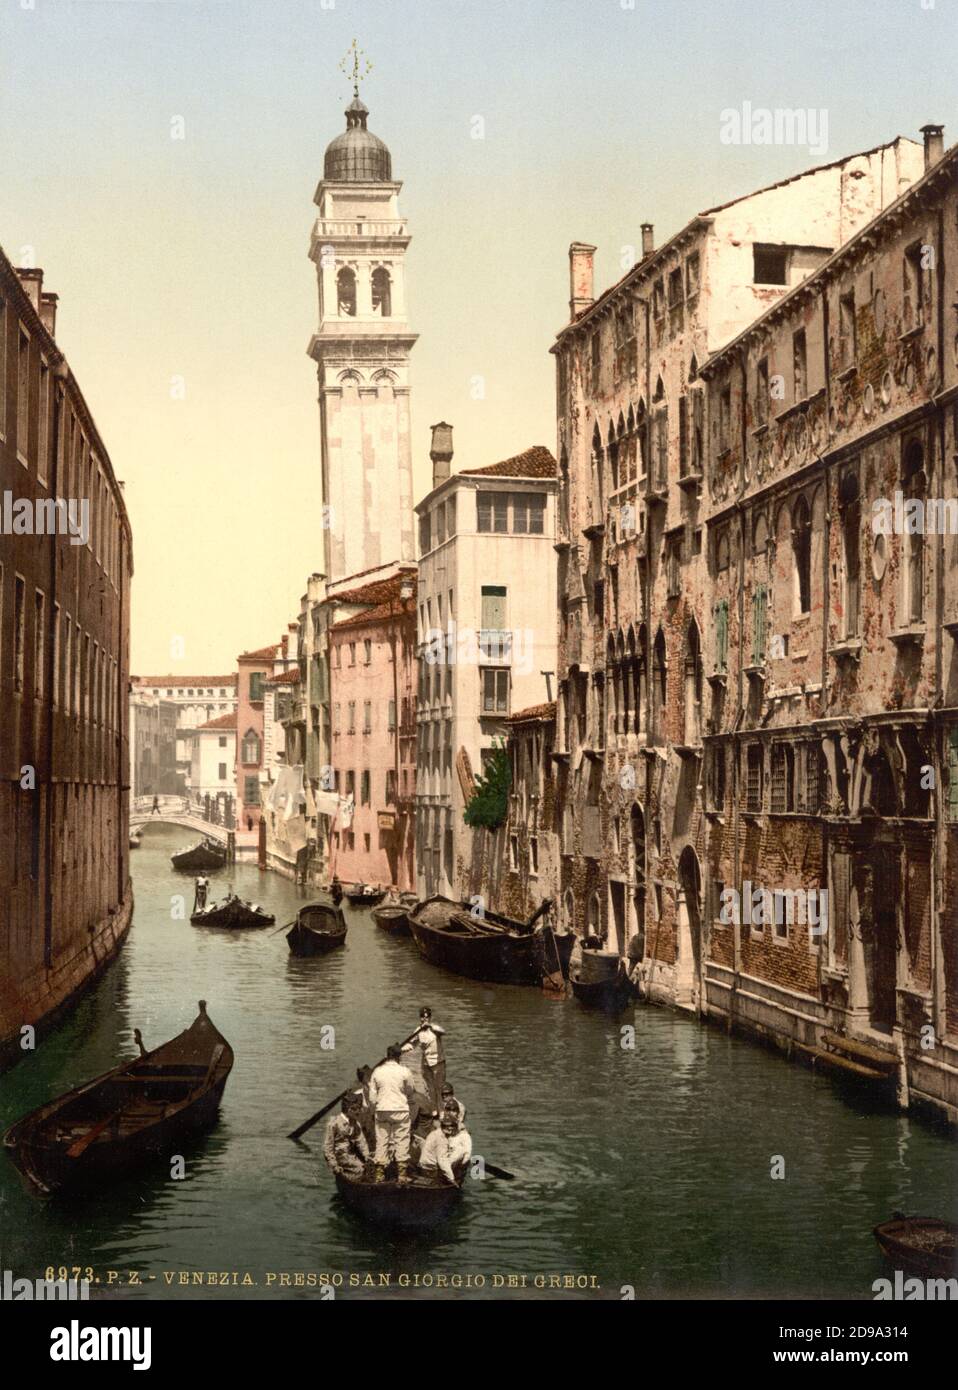 1895 ca. , VENEZIA ,  ITALY :  Old Venetian canal near SAN GIORGIO DEI GRECI . Photocrom print colors edited by Detroit Publishing Co.  -  VENICE - VENETO -  ITALIA - FOTO STORICHE - HISTORY - GEOGRAFIA - GEOGRAPHY  - ARCHITETTURA - ARCHITECTURE  -    -  campanile - chiesa - church -  ARTS - ARTE - canale   ----  Archivio GBB Stock Photo